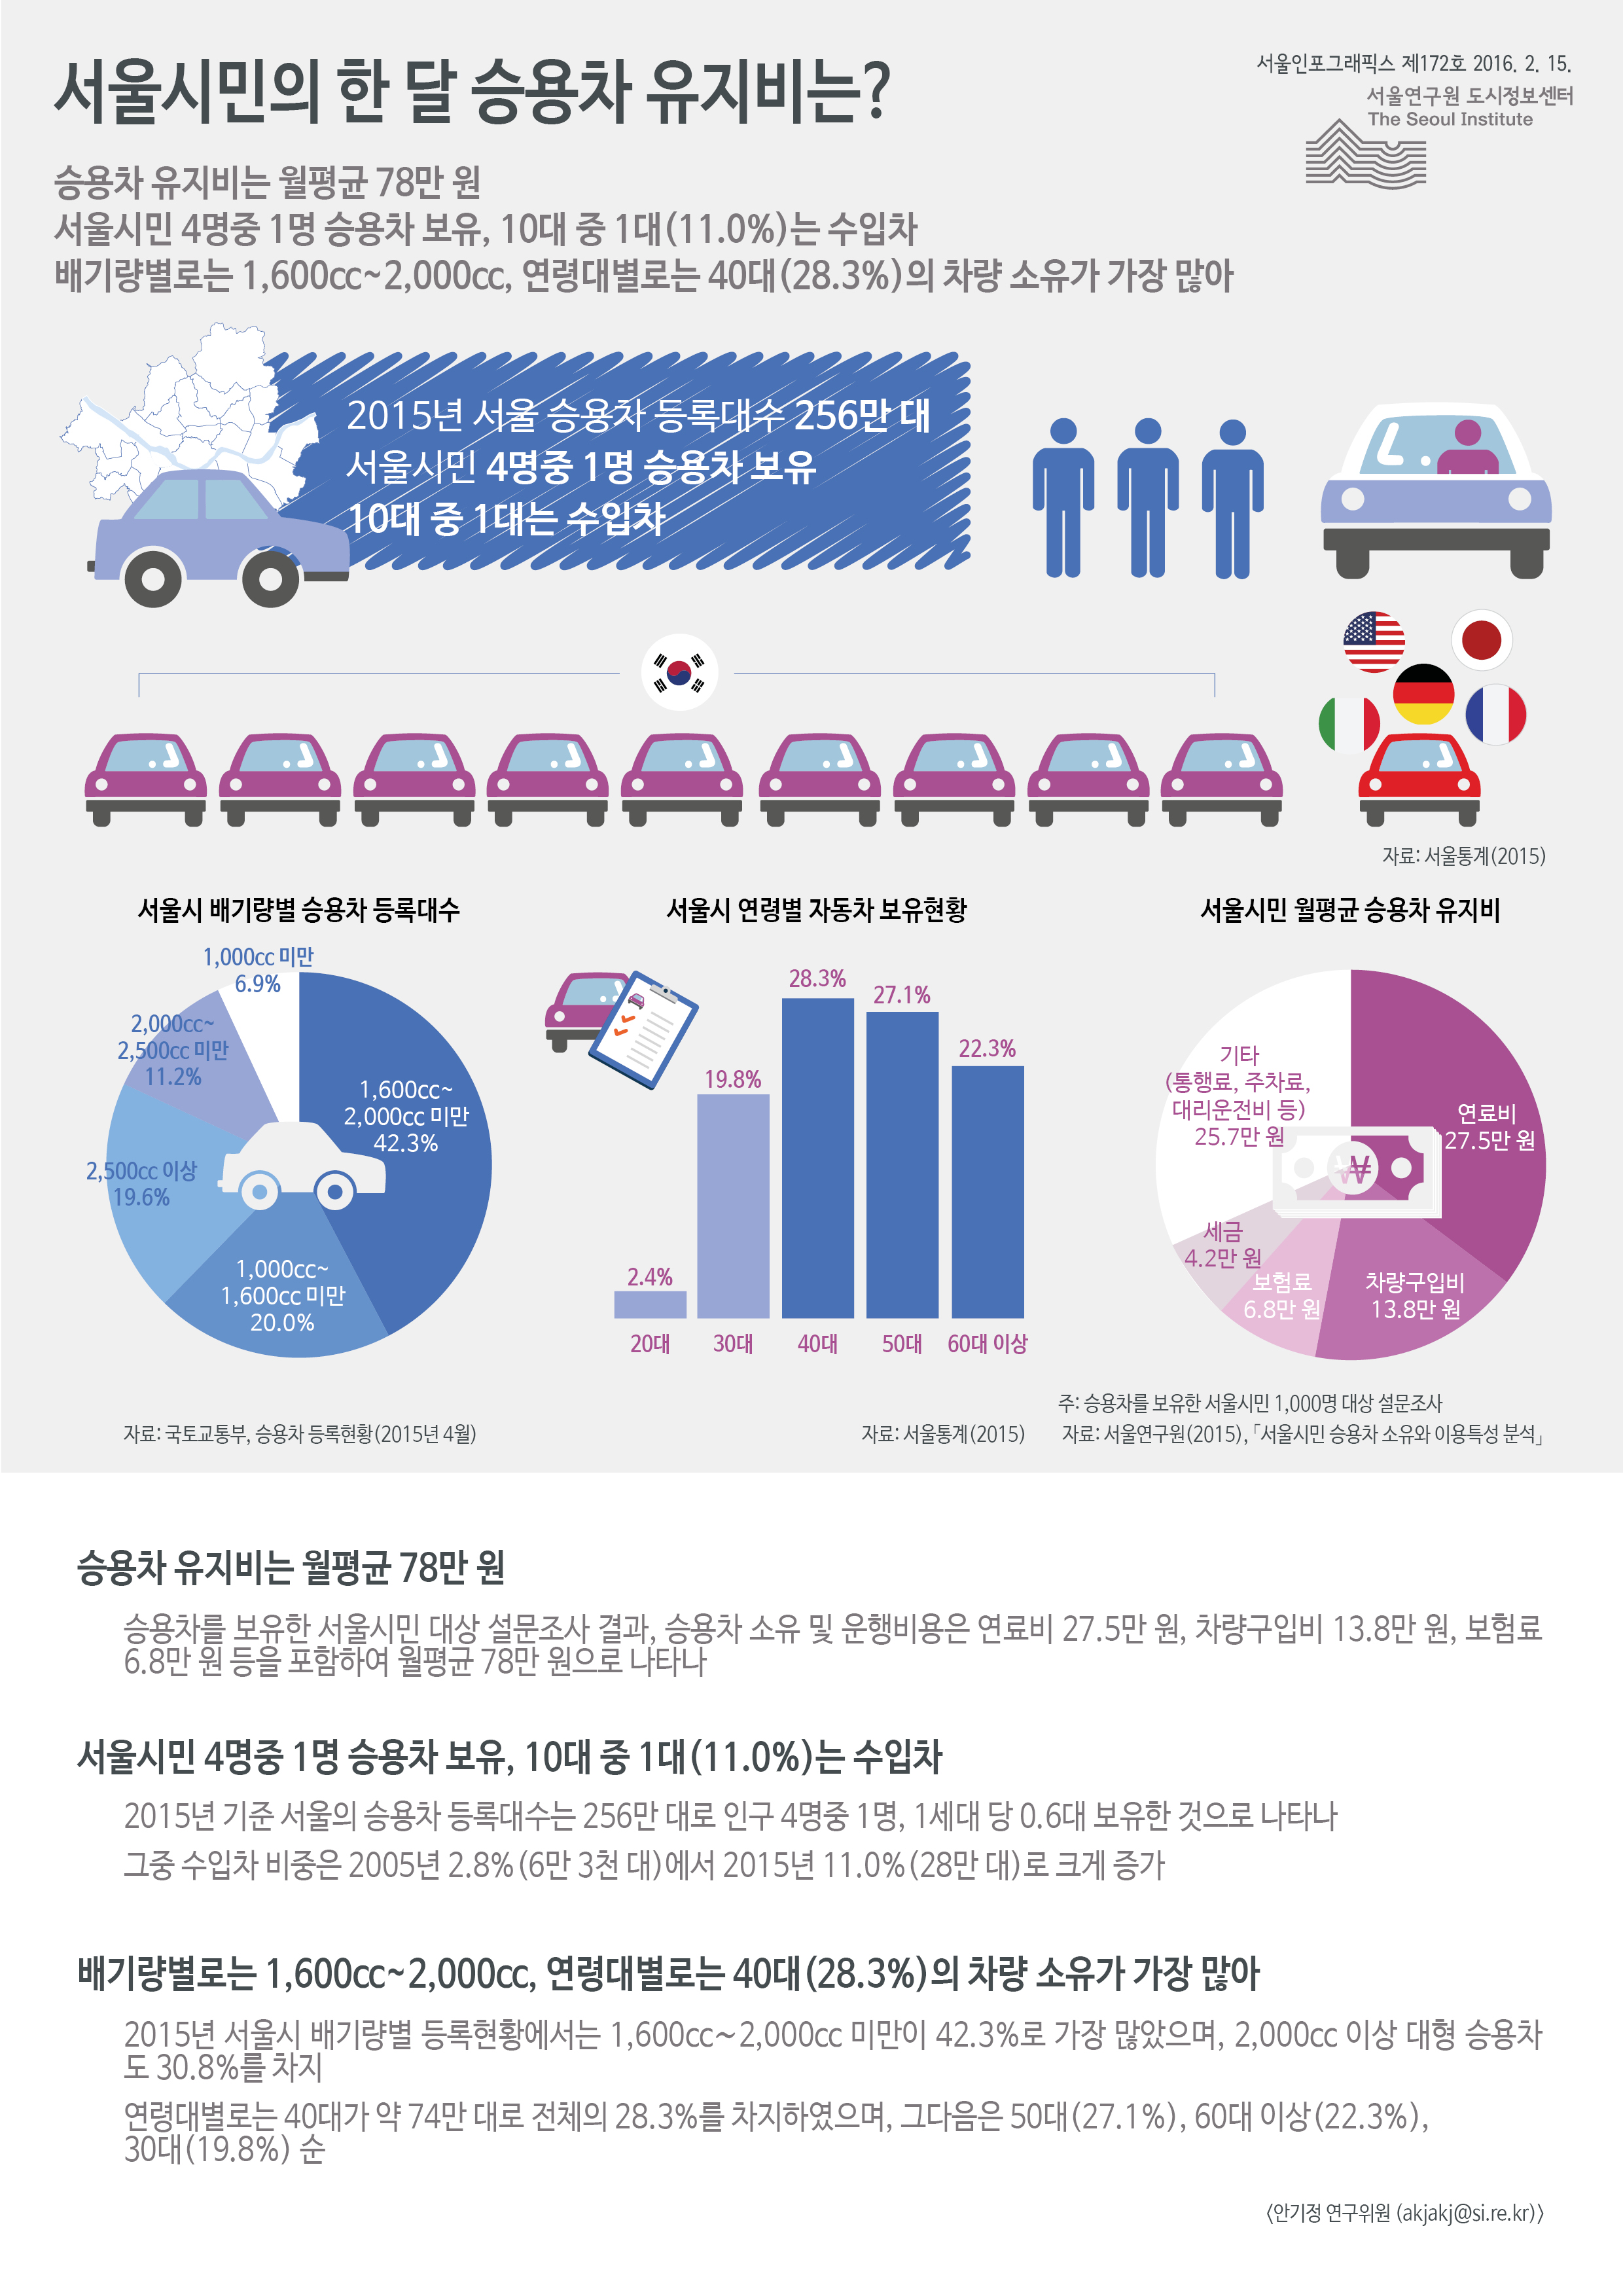 서울시민의 한 달 승용차 유지비는? 서울인포그래픽스 제172호 2016년 2월 15일 승용차 유지비는 월평균 78만 원, 서울시민 4명중 1명 승용차 보유, 10대 중 1대(11.0%)는 수입차. 배기량별로는 1,600cc~2,000cc, 연령대별로는 40대의 차량 소유가 28.3%로 가장 많음으로 정리될 수 있습니다. 인포그래픽으로 제공되는 그래픽은 하단에 표로 자세히 제공됩니다.